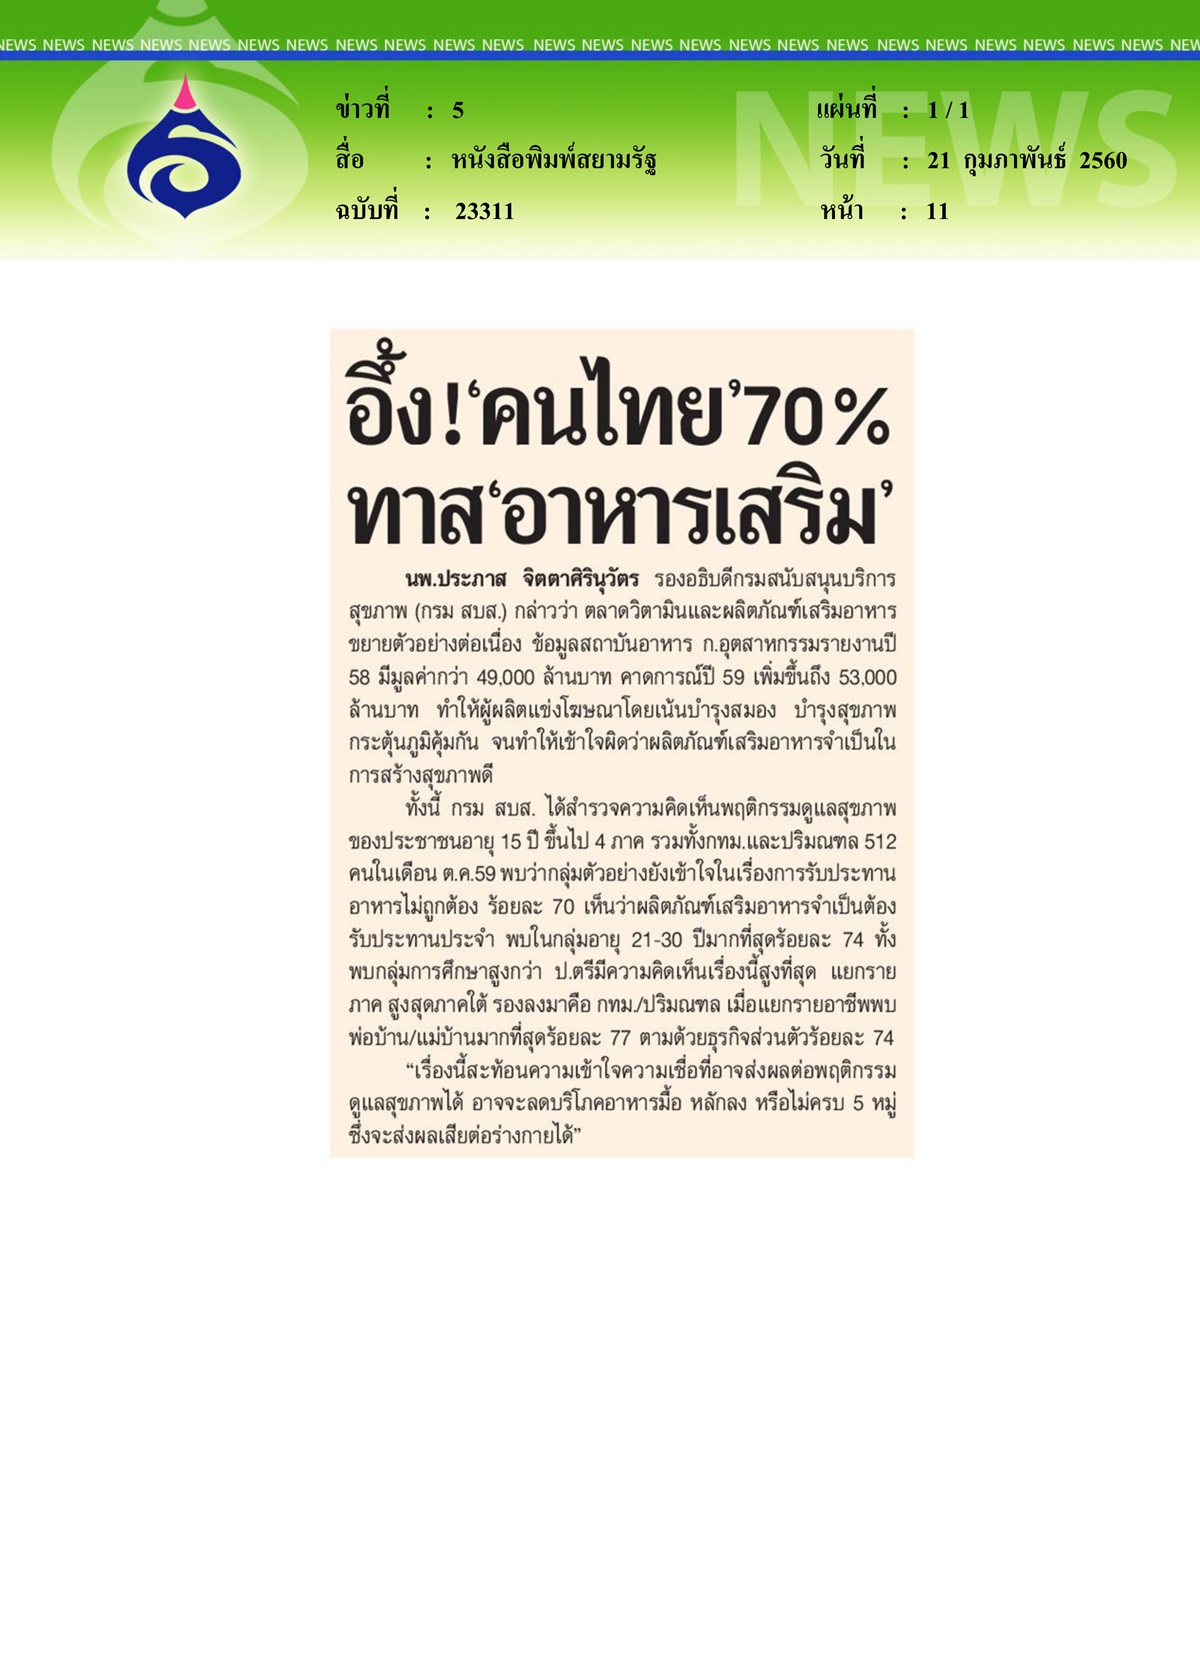 หนังสือพิมพ์สยามรัฐ, อึ้งคนไทย 70% ทาสอาหารเสริม